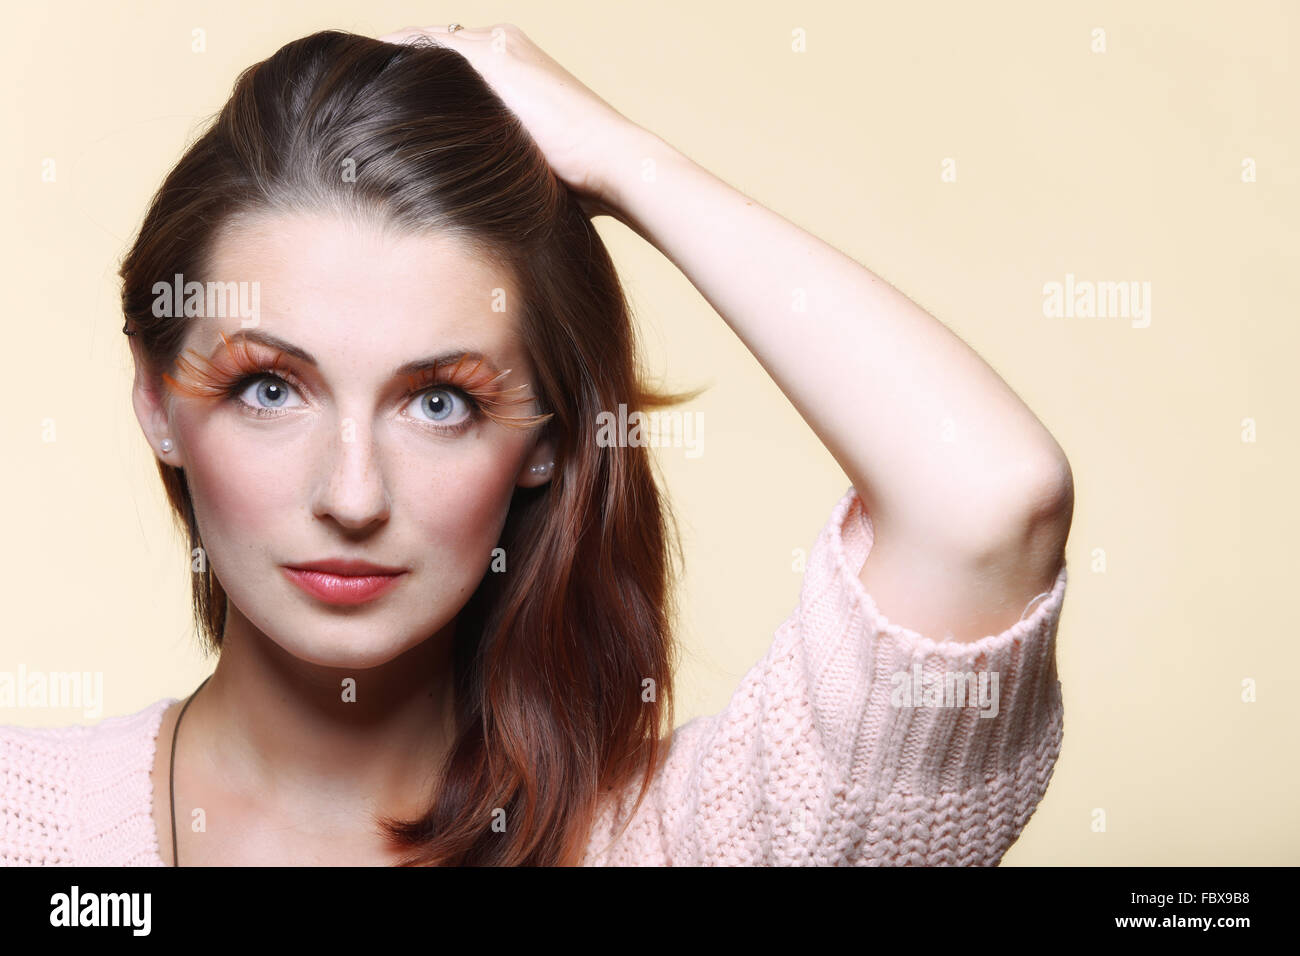 Autumn woman stylish creative make up false eye lashes Stock Photo